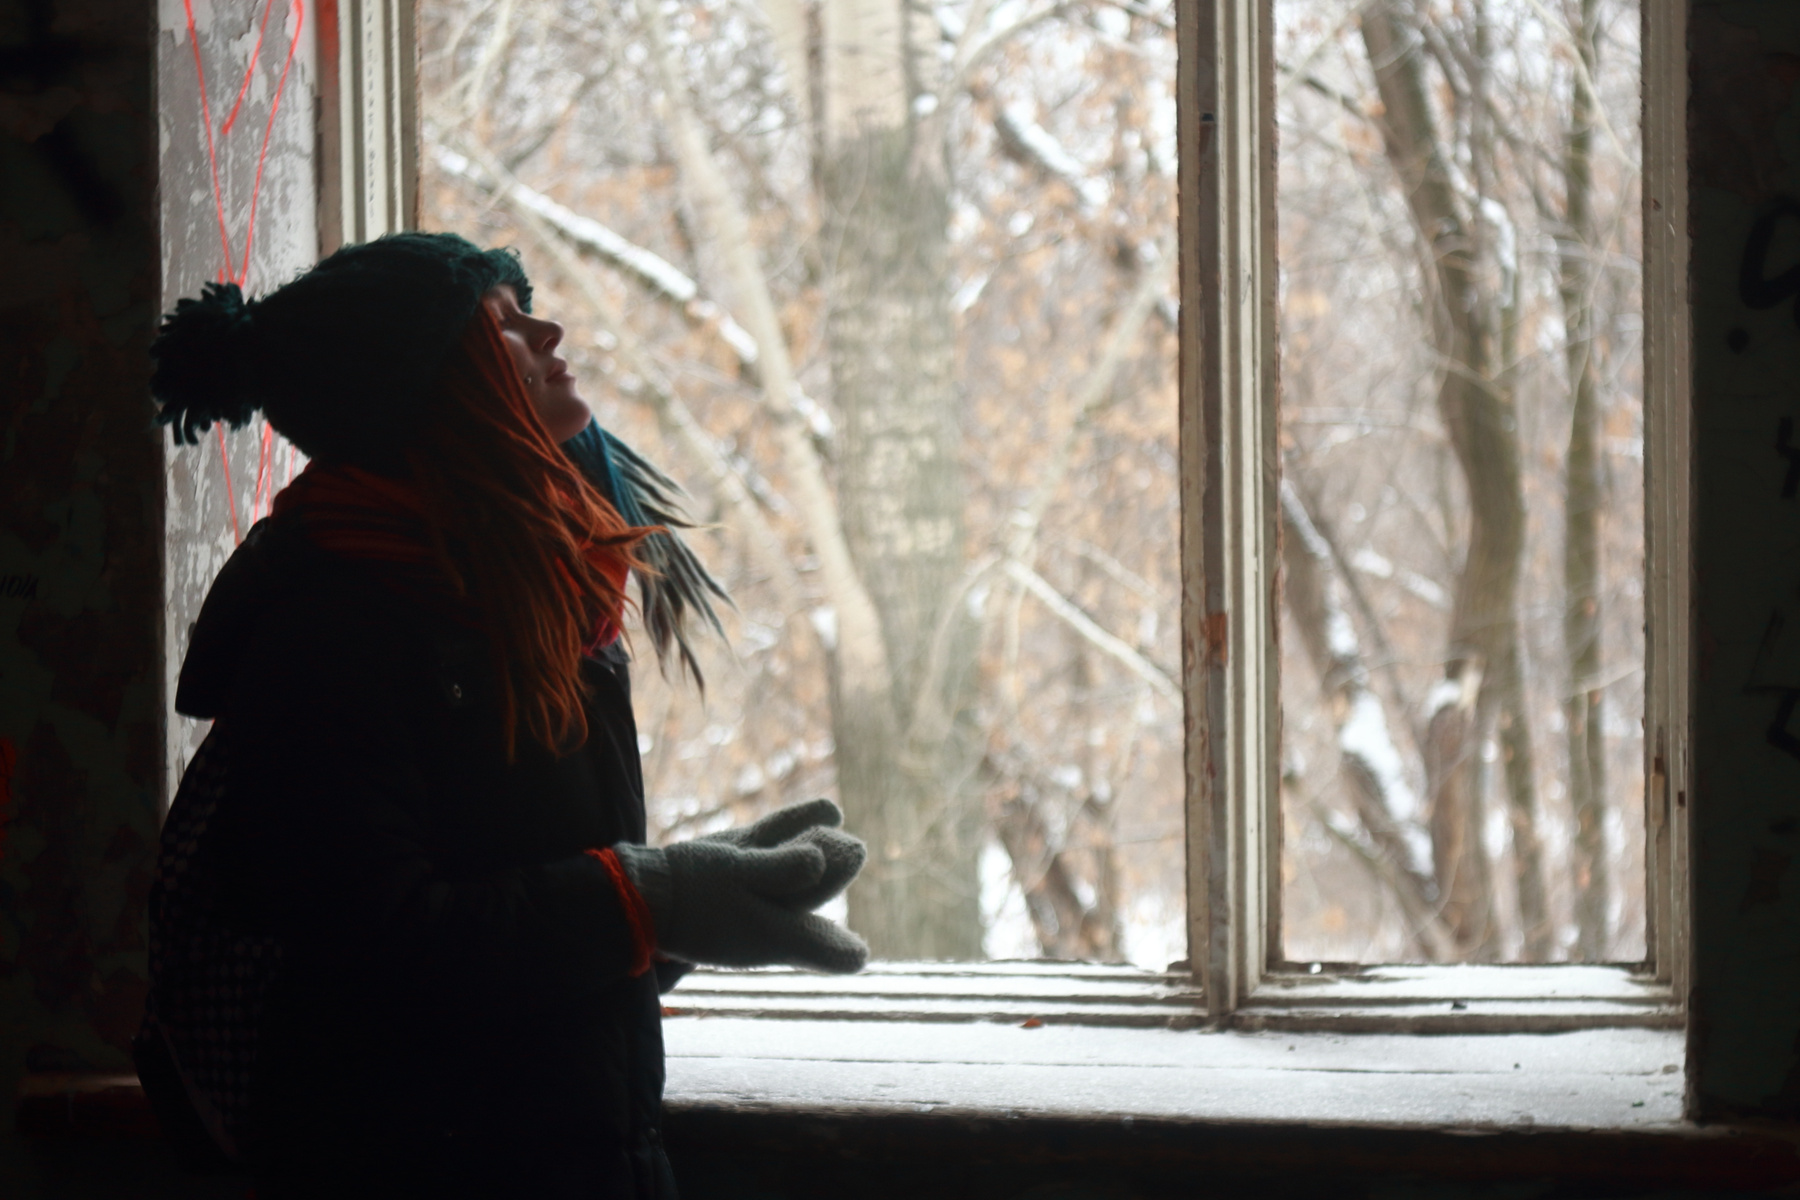 *** Портрет зима девушка красивая дредды руки варежки шапка лицо фон окно рама деревья рыжий голубой синий размытие размытость индустар